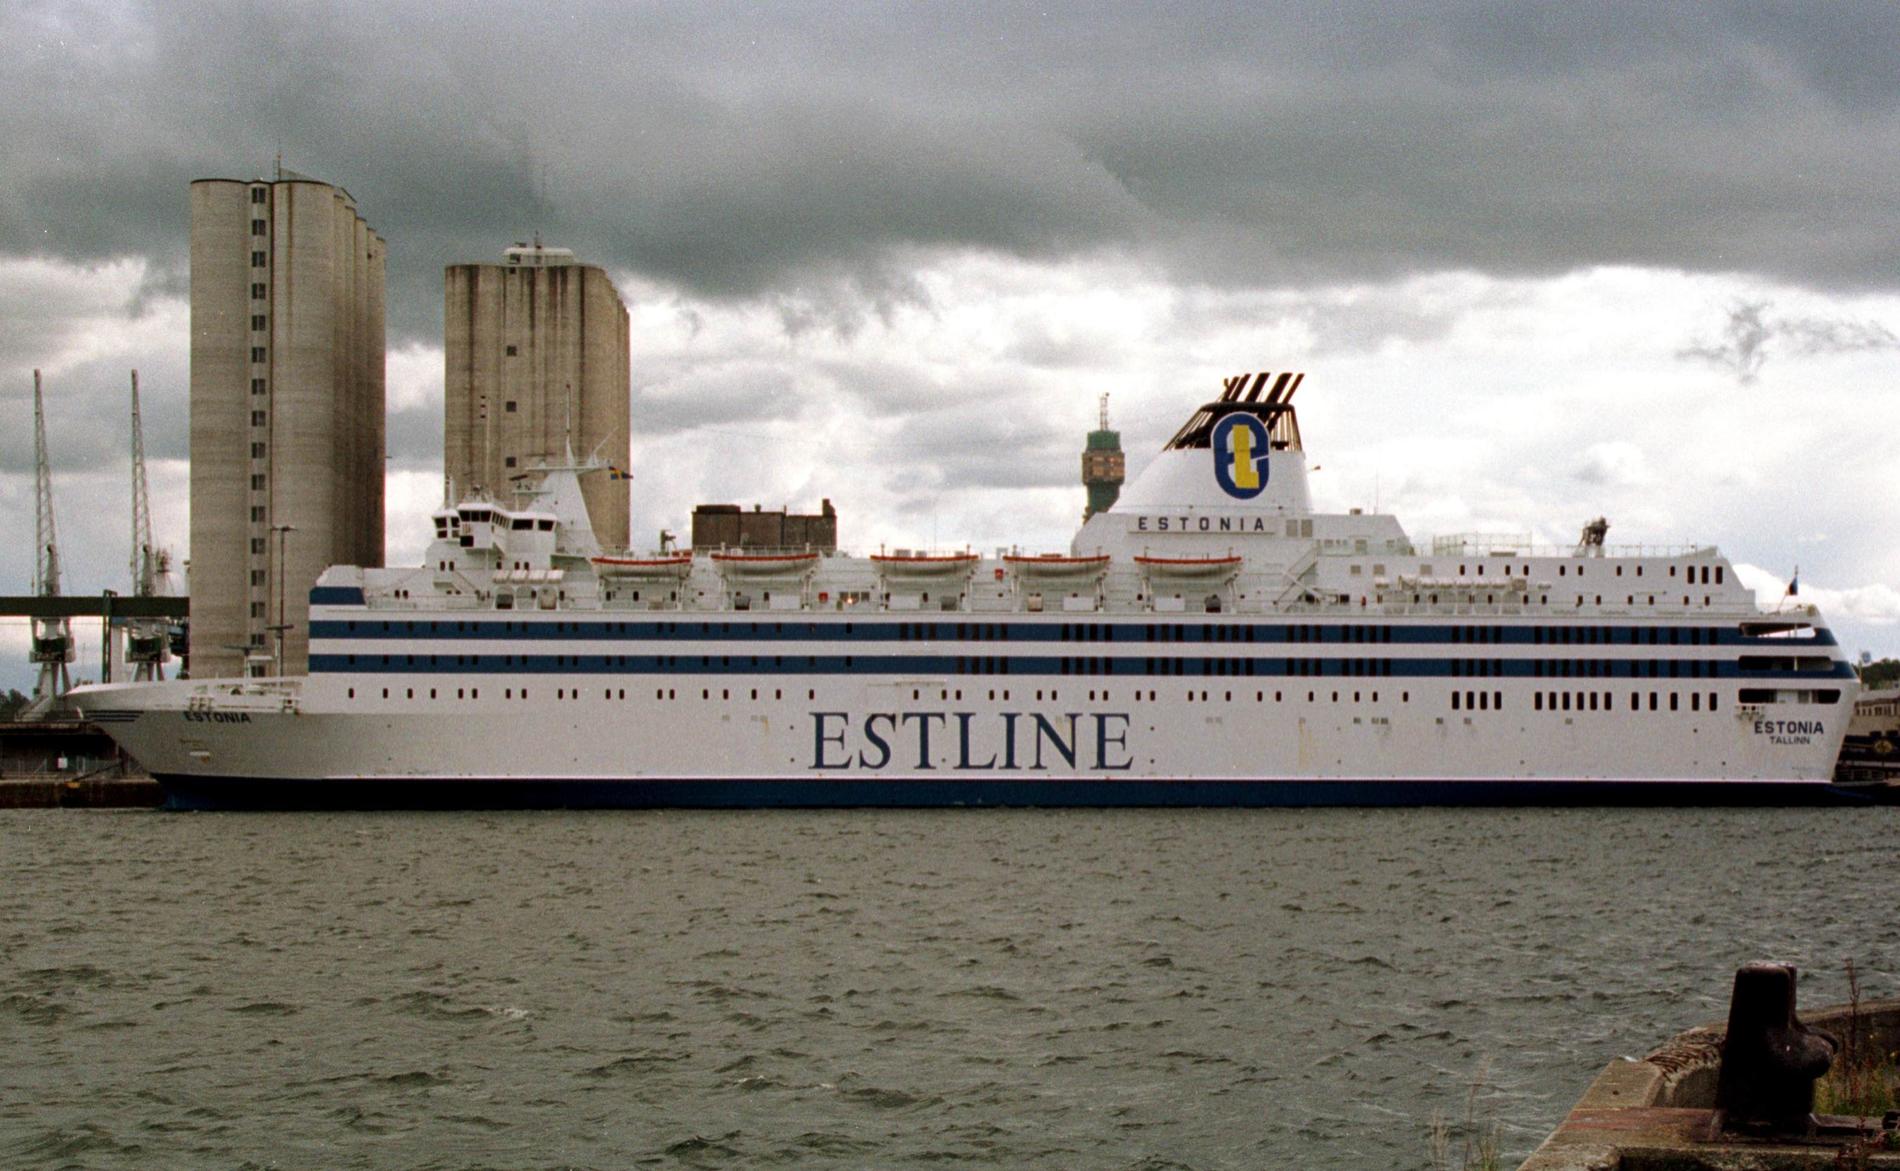 Passagerarfärjan M/S Estonia förliste den 28 september 1994. 852 människor omkom.